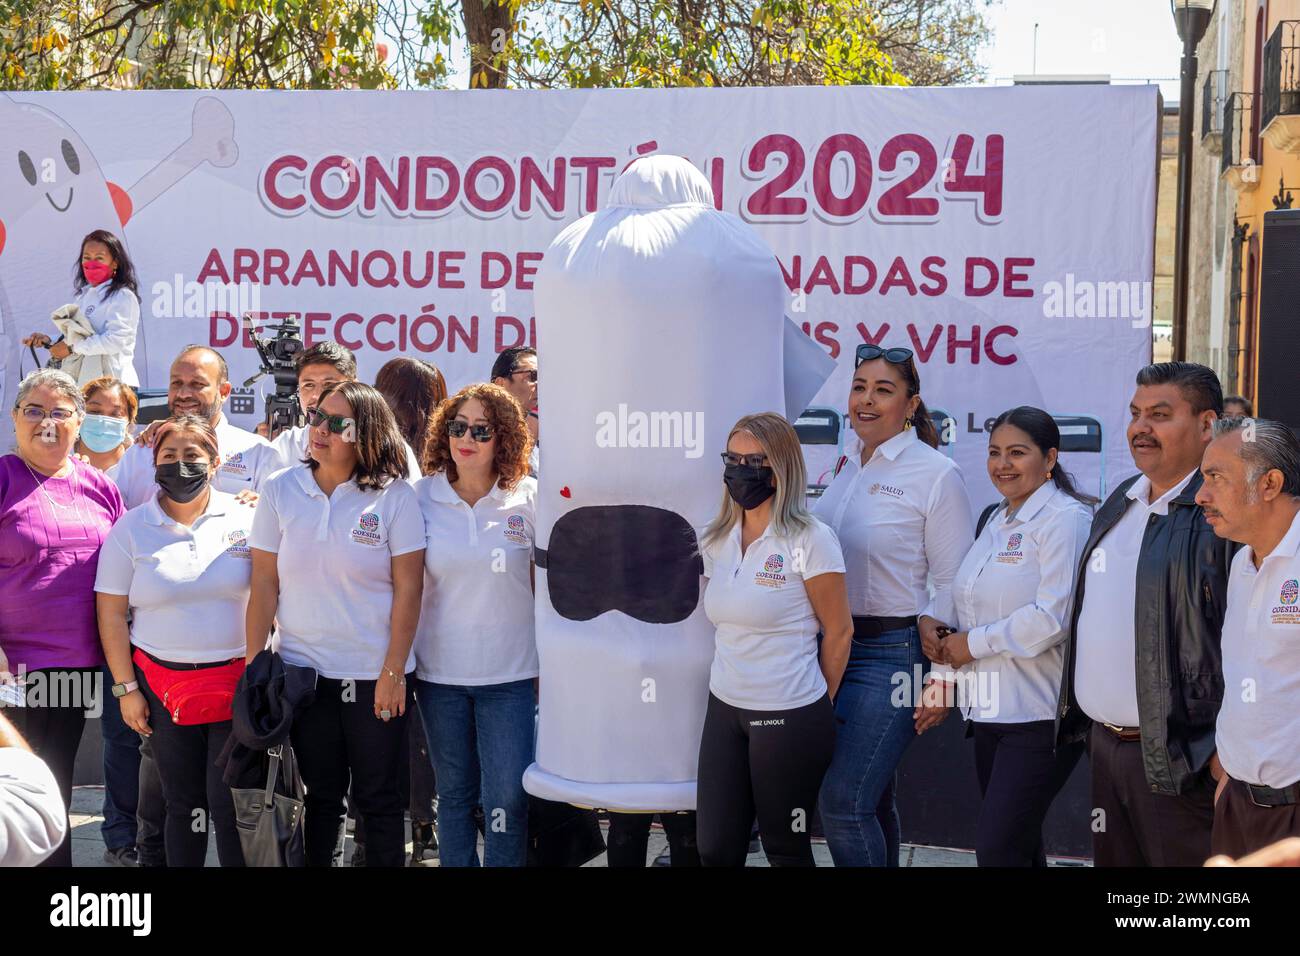 Oaxaca, Mexique - les agents de santé posent pour des photos avec une personne portant un costume de préservatif dans le cadre de leur campagne contre les maladies sexuellement transmissibles Banque D'Images